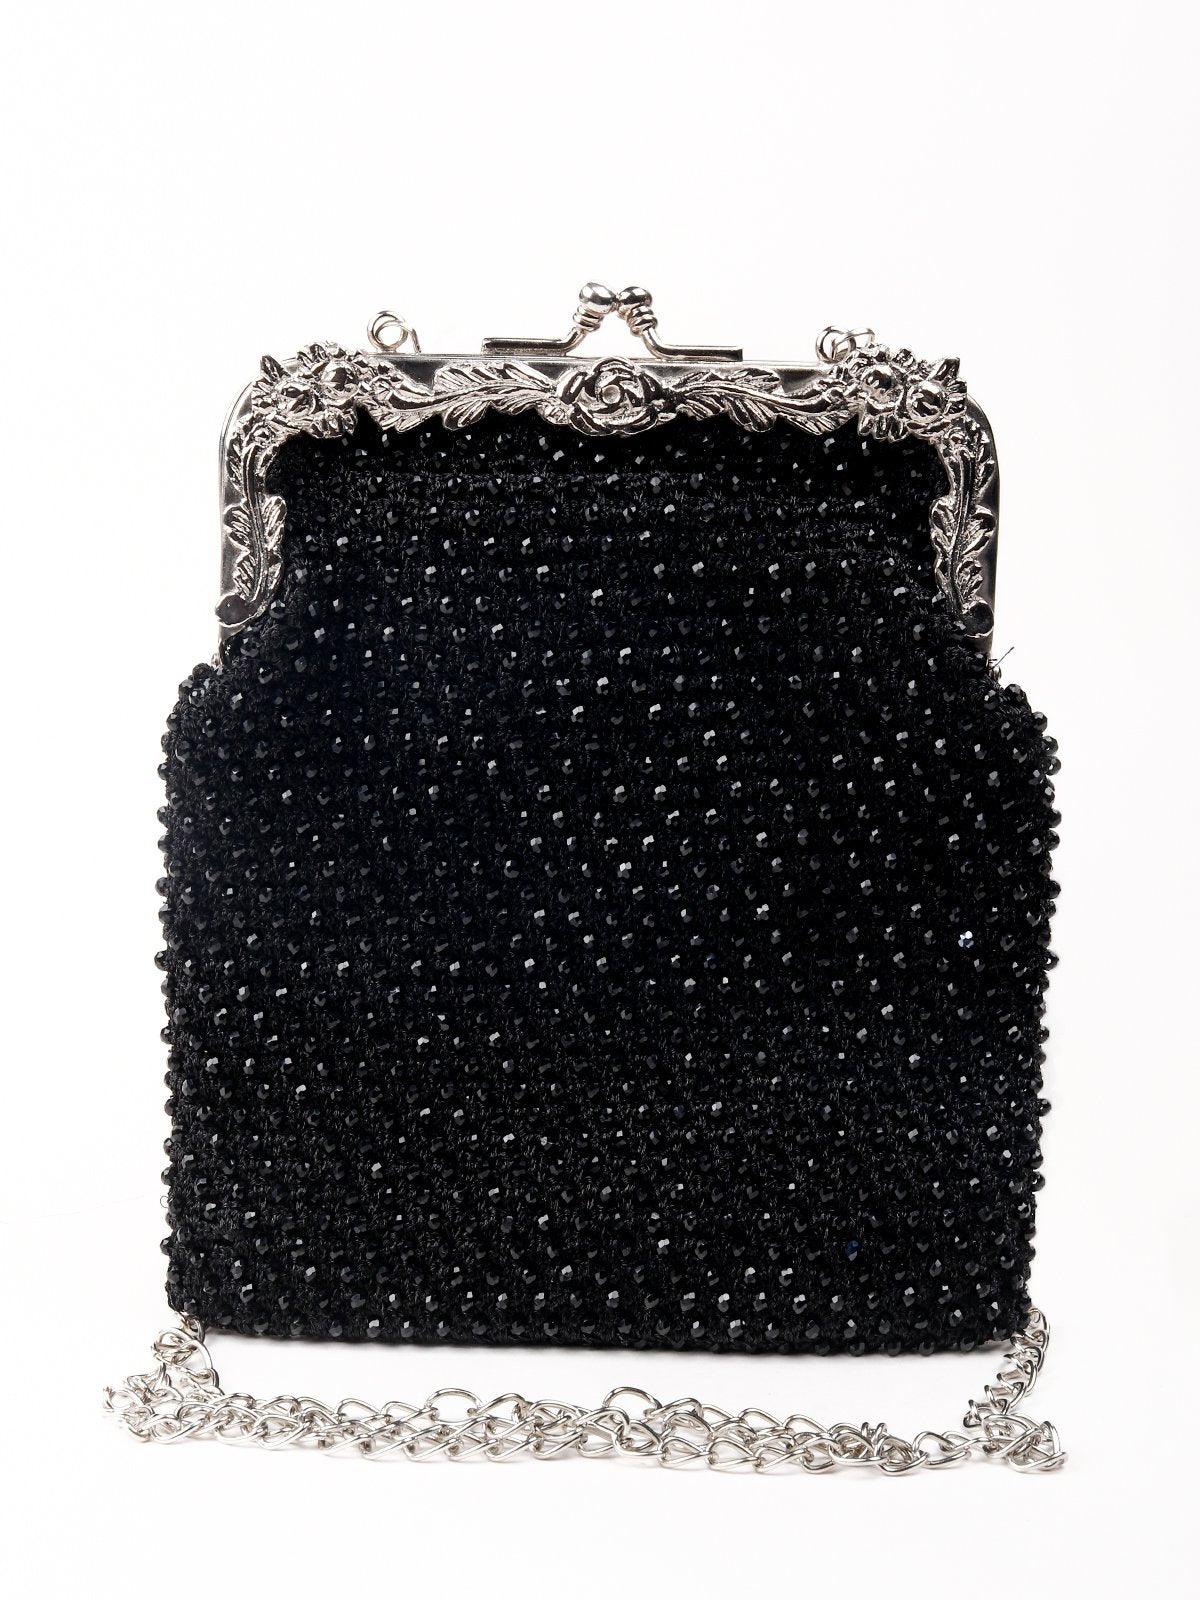 Shining black,floral border sling bag - Odette